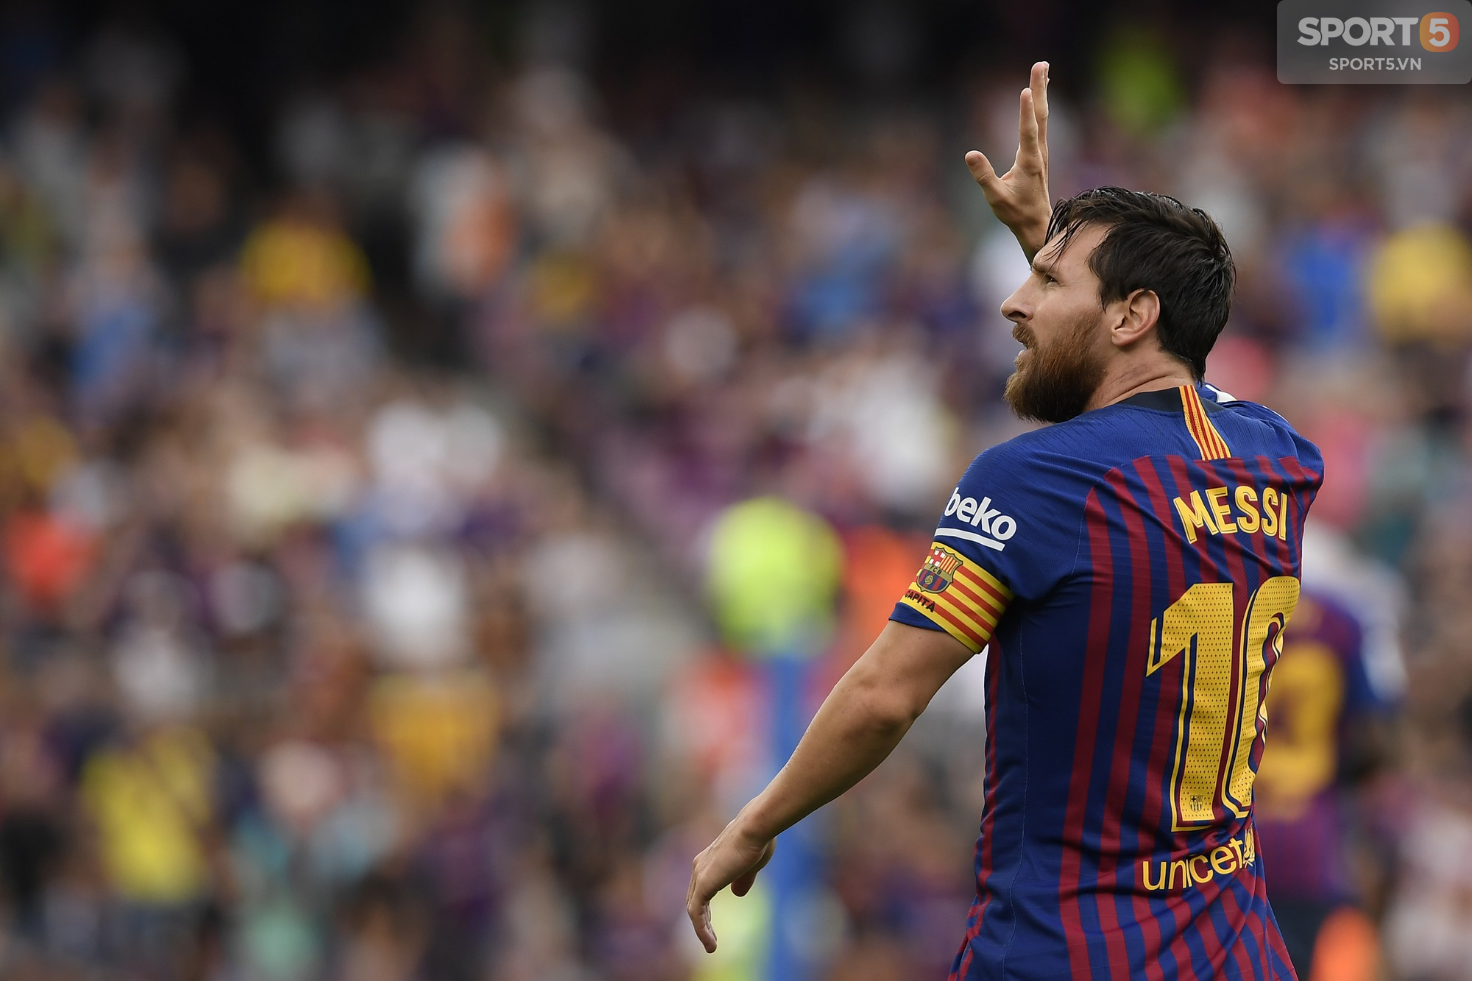 Đề cử danh hiệu The Best: Ngoài Messi, 4 cái tên khác cũng xứng đáng có mặt trong danh sách - Ảnh 1.